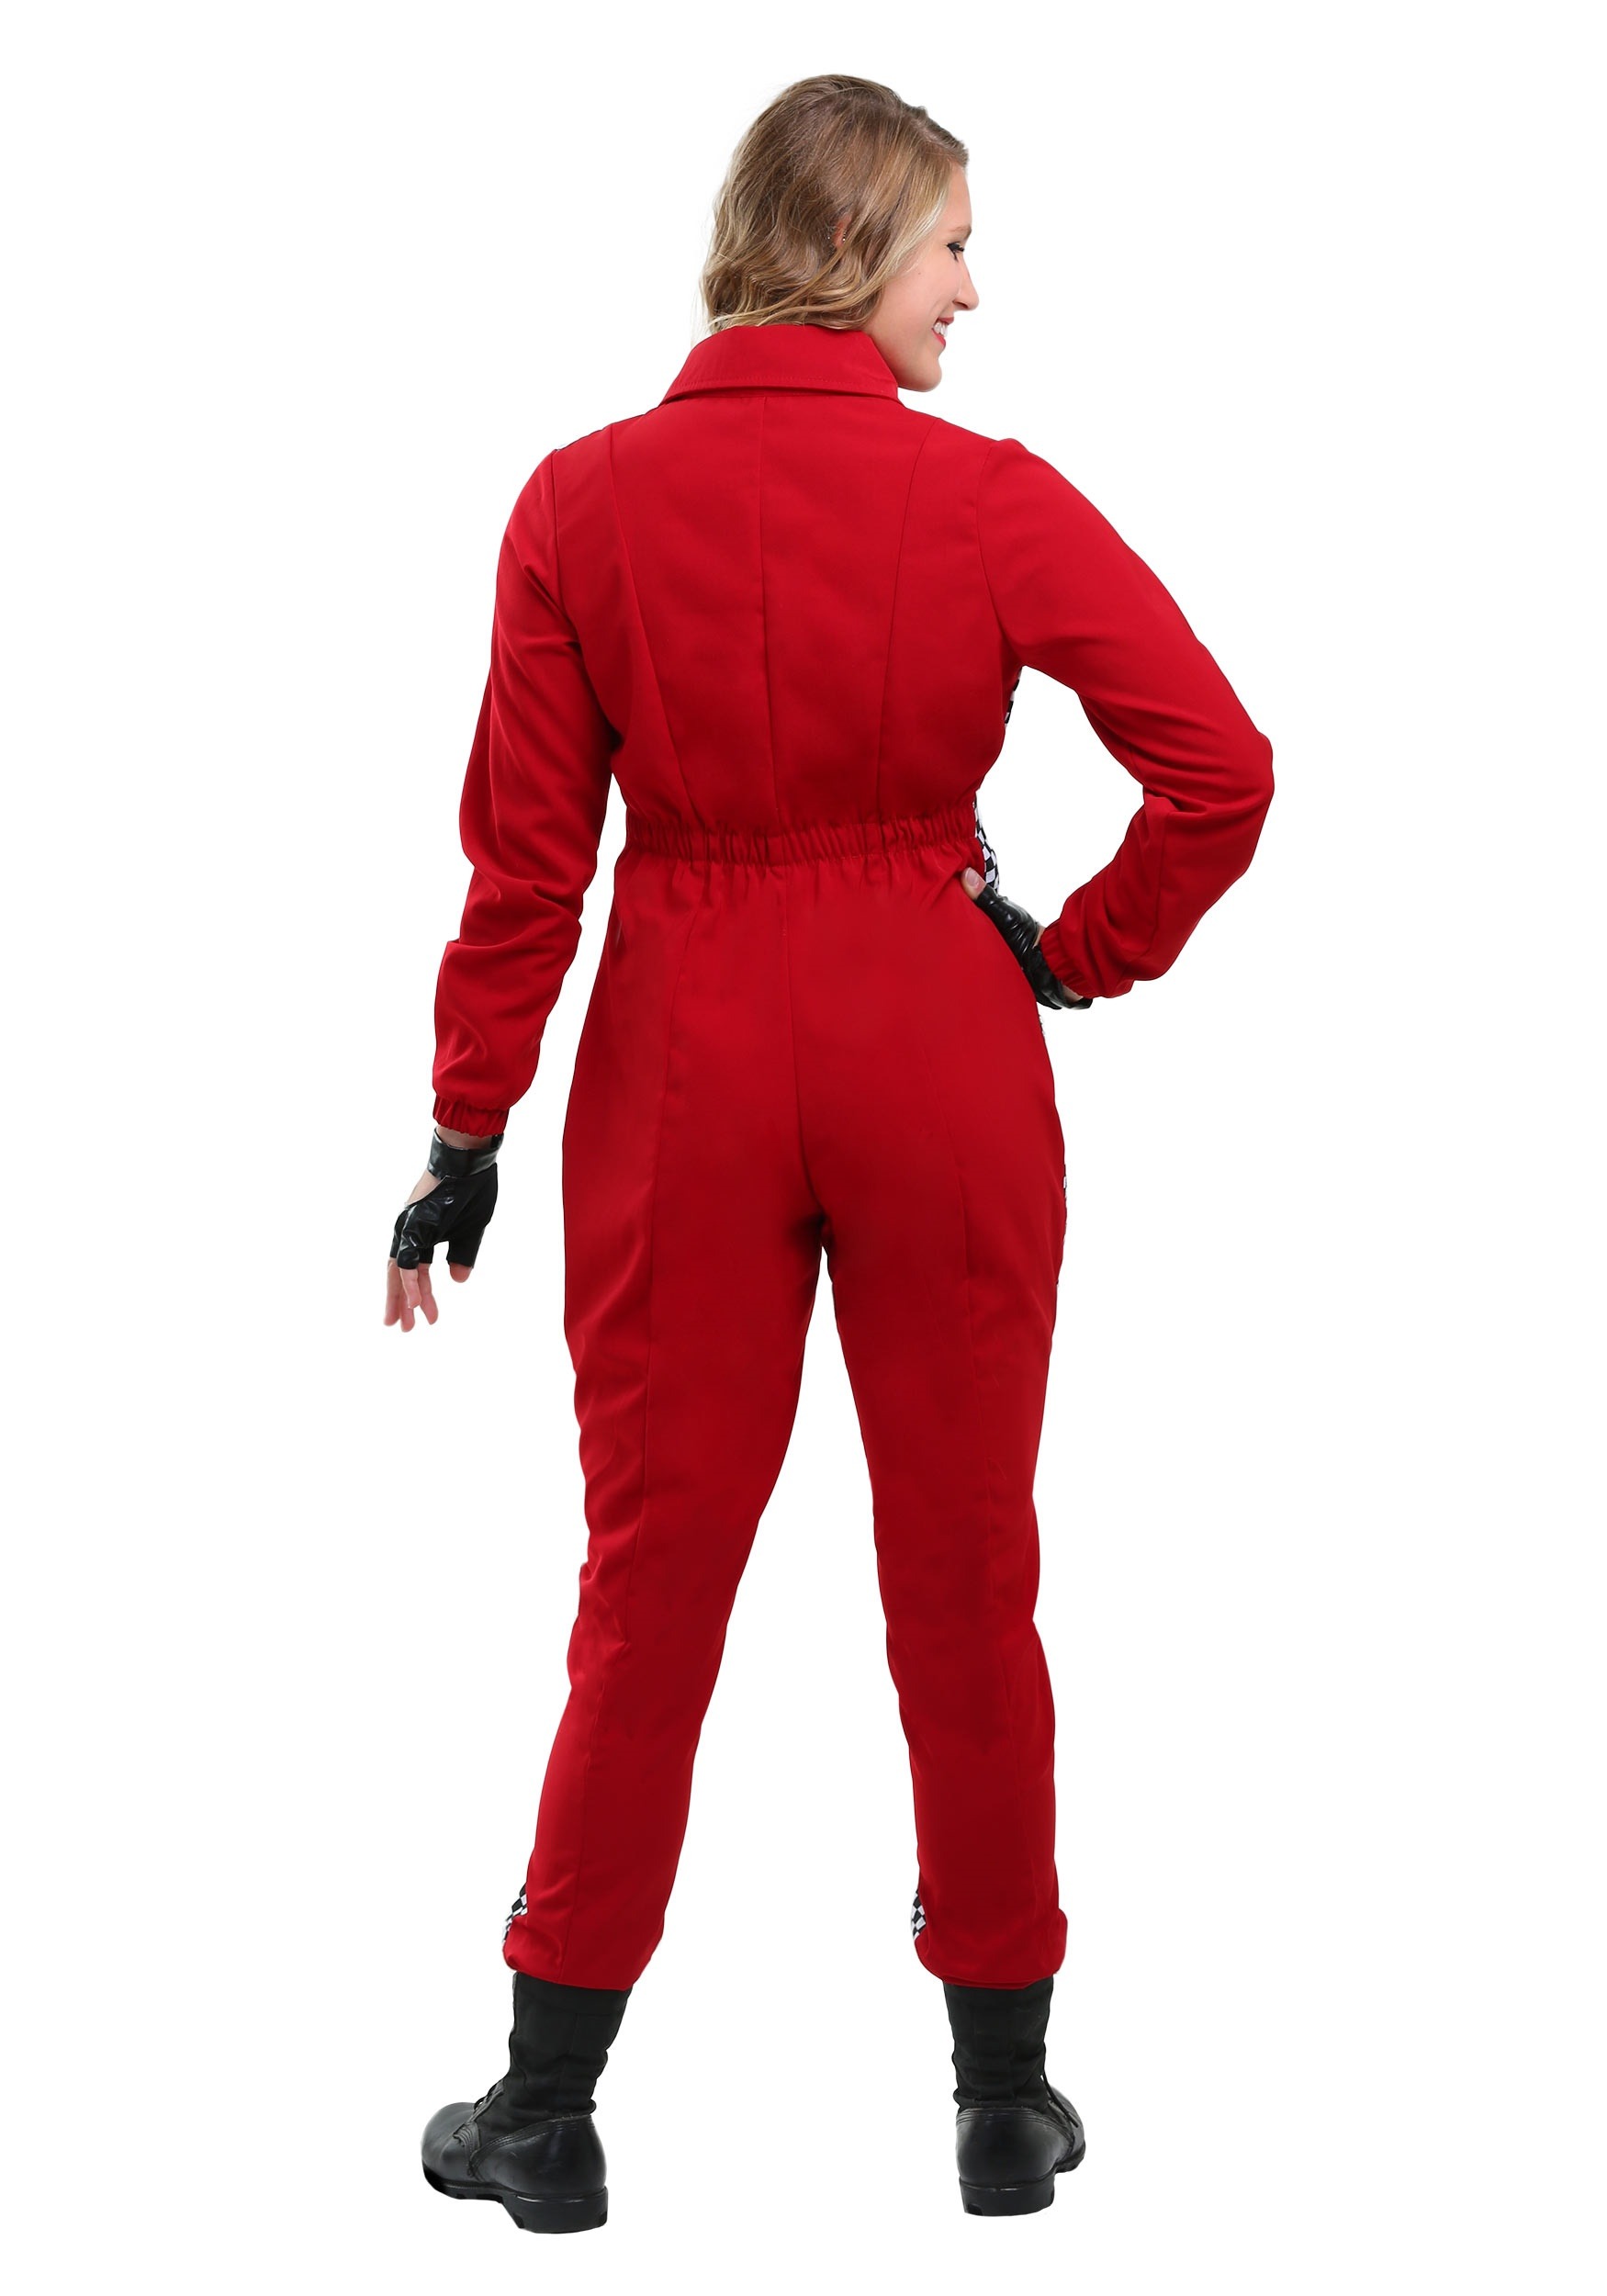 Racer Jumpsuit Plus Size Fancy Dress Costume For Women